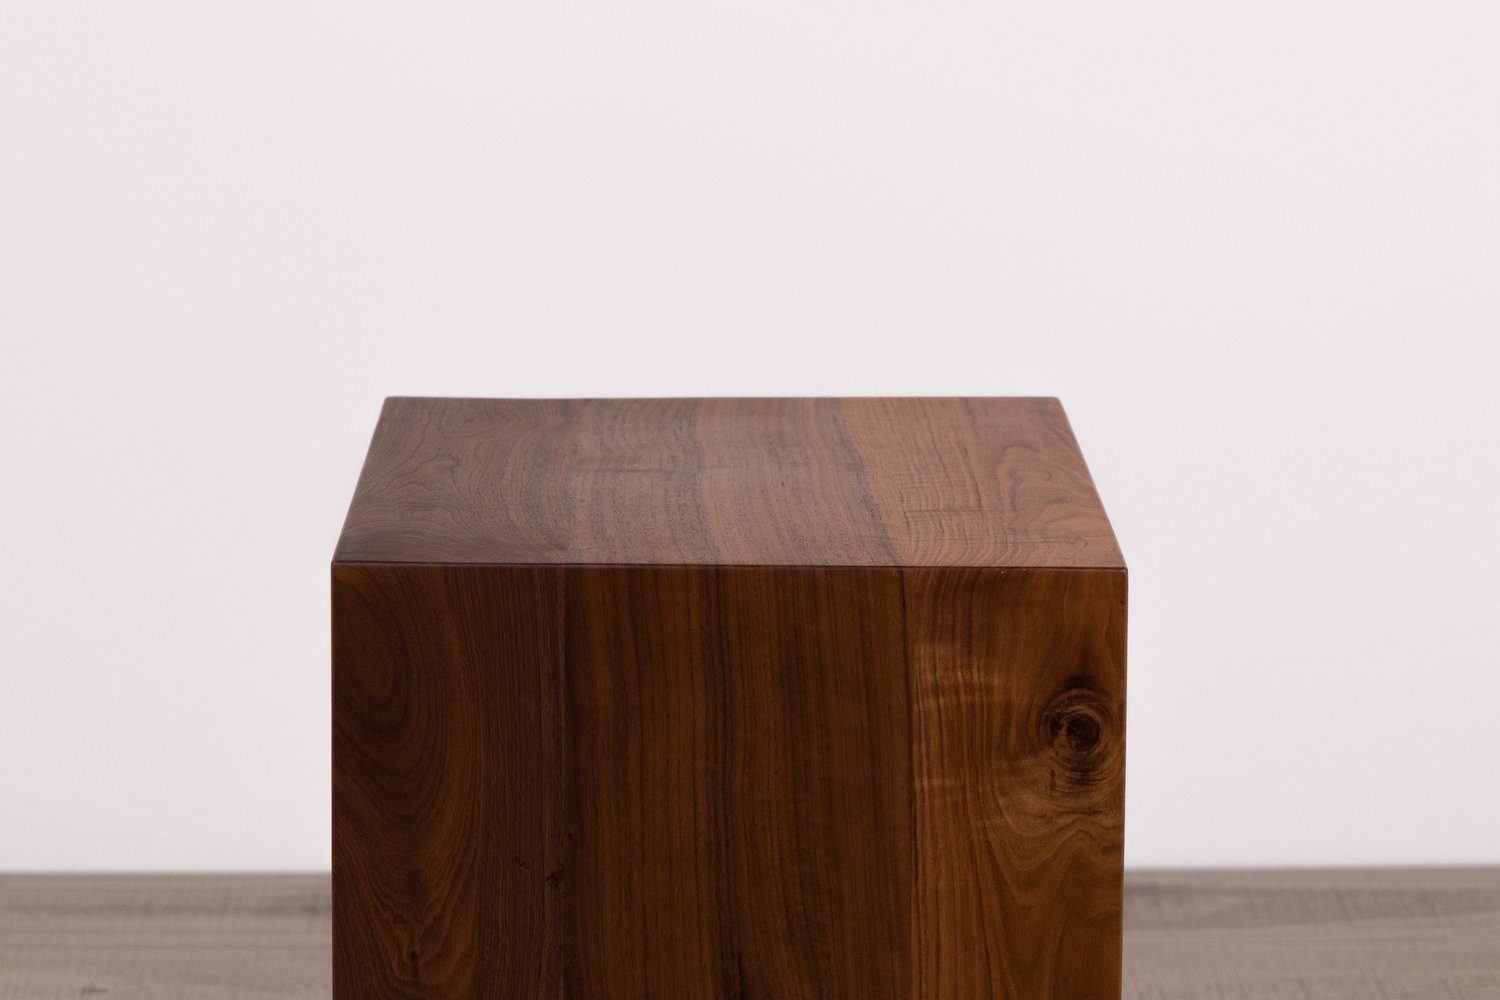 Waterfall Side Table with Storage Shelf — 3x3 Custom